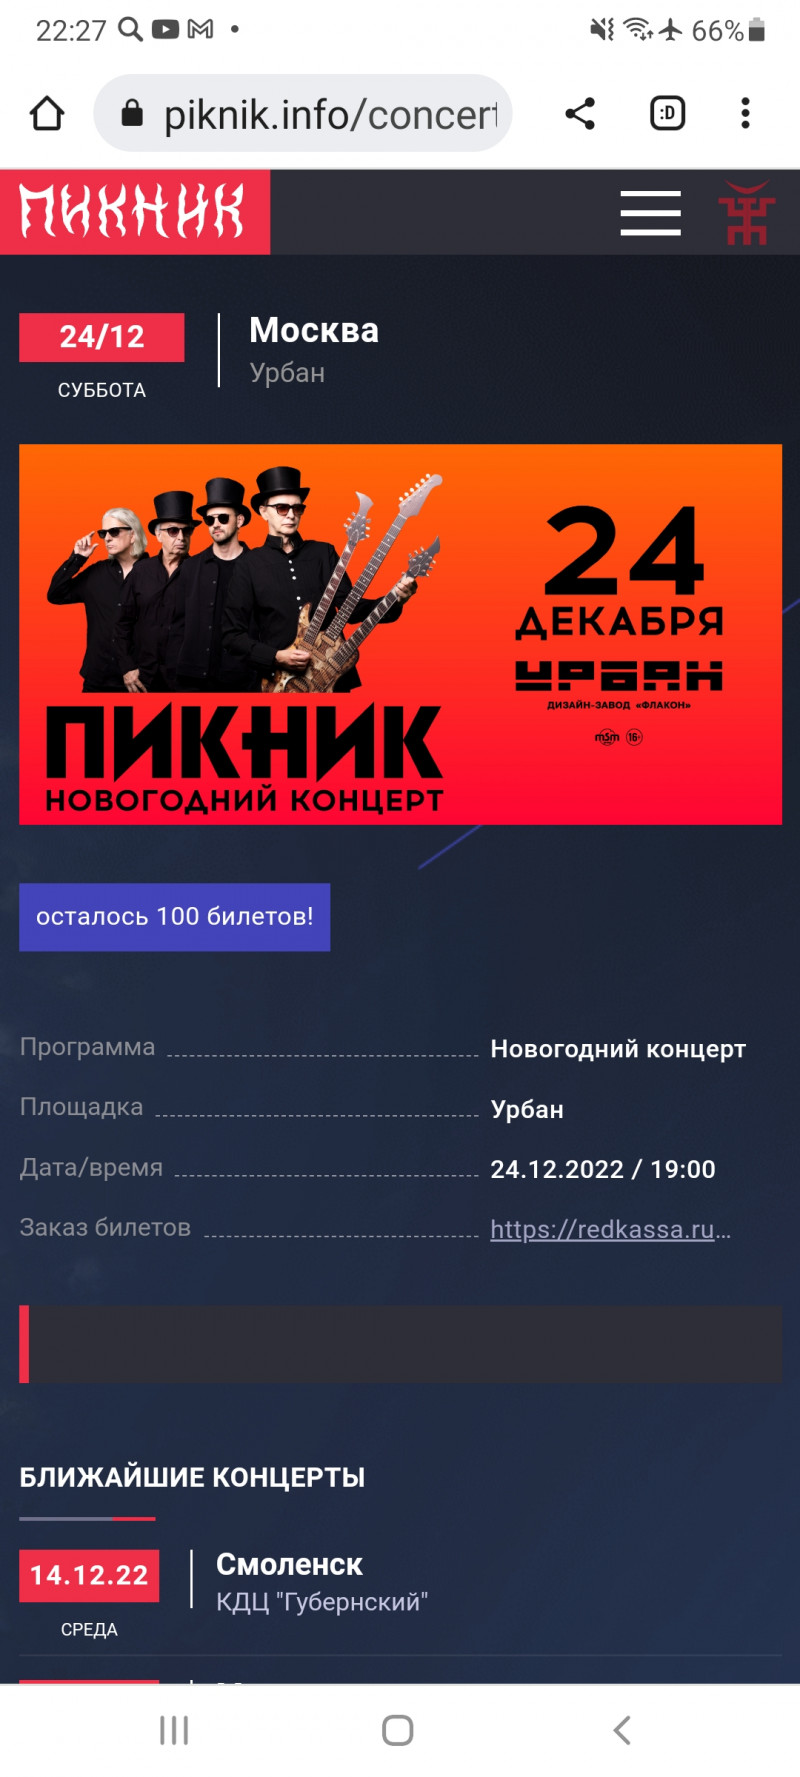 "ПИКНИК" - Новогодний концерт, Россия, Москва, 2022-12-24